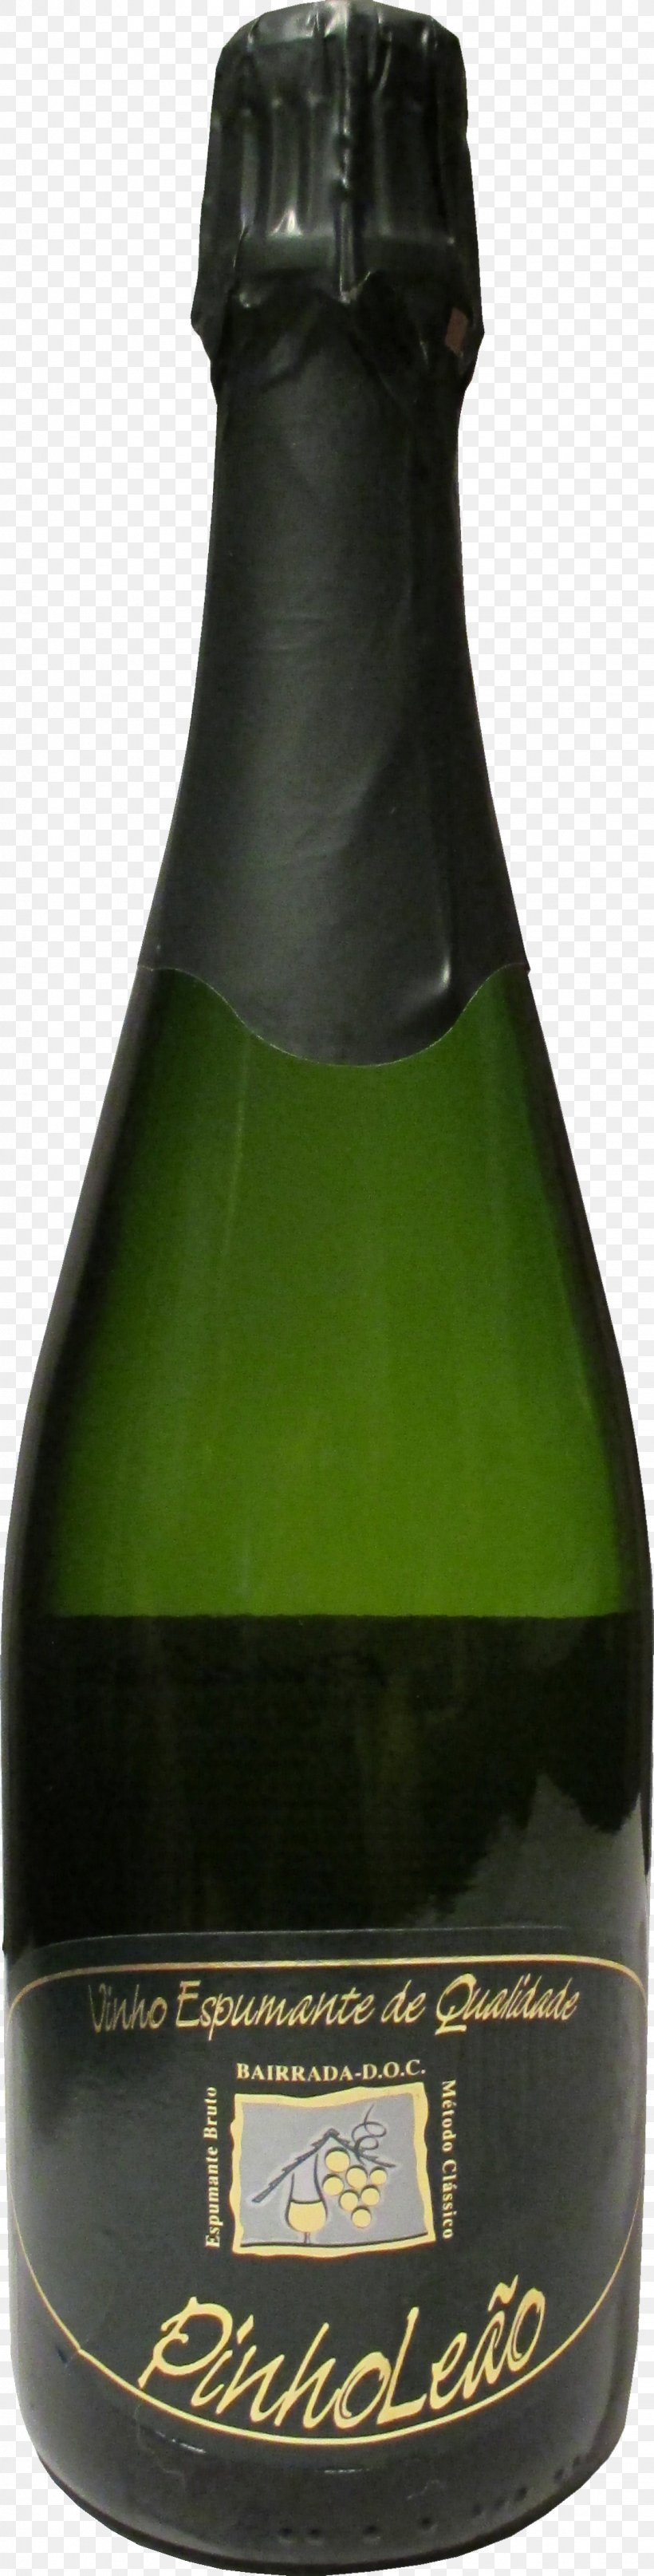 Champagne Dessert Wine Glass Bottle Liqueur, PNG, 1124x4427px, Champagne, Alcoholic Beverage, Beer, Beer Bottle, Bottle Download Free